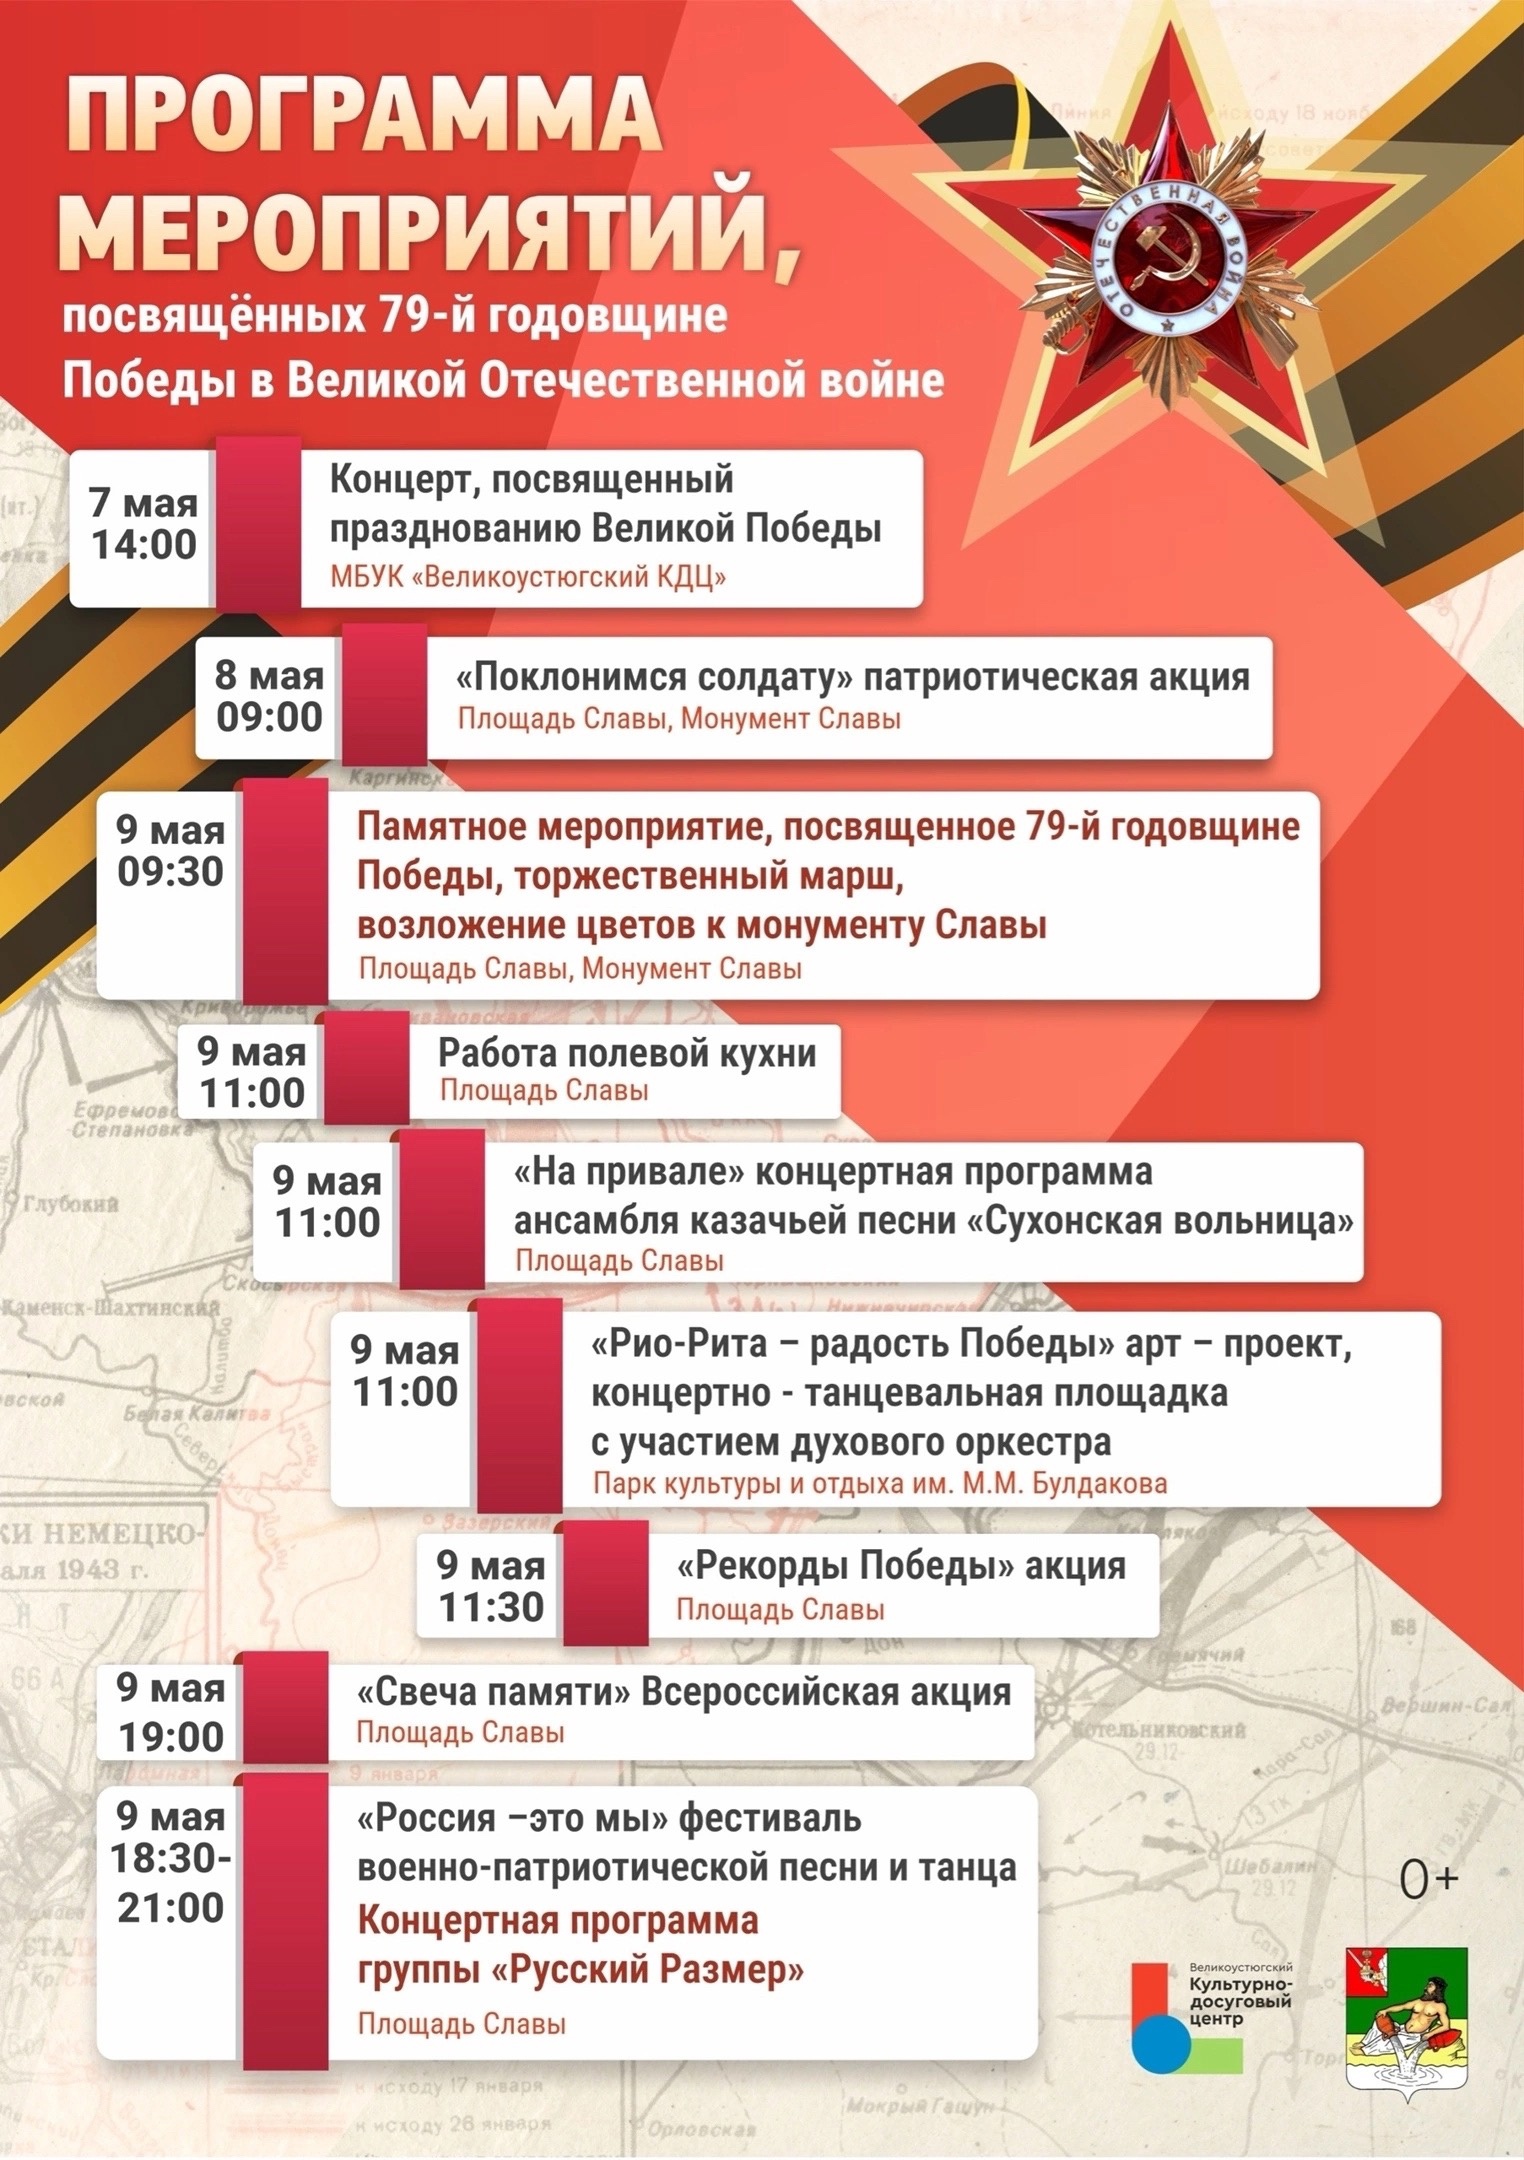 Программа памятных мероприятий, которые пройдут в Великом Устюге в честь 79-й годовщины Победы в Великой Отечественной войне.